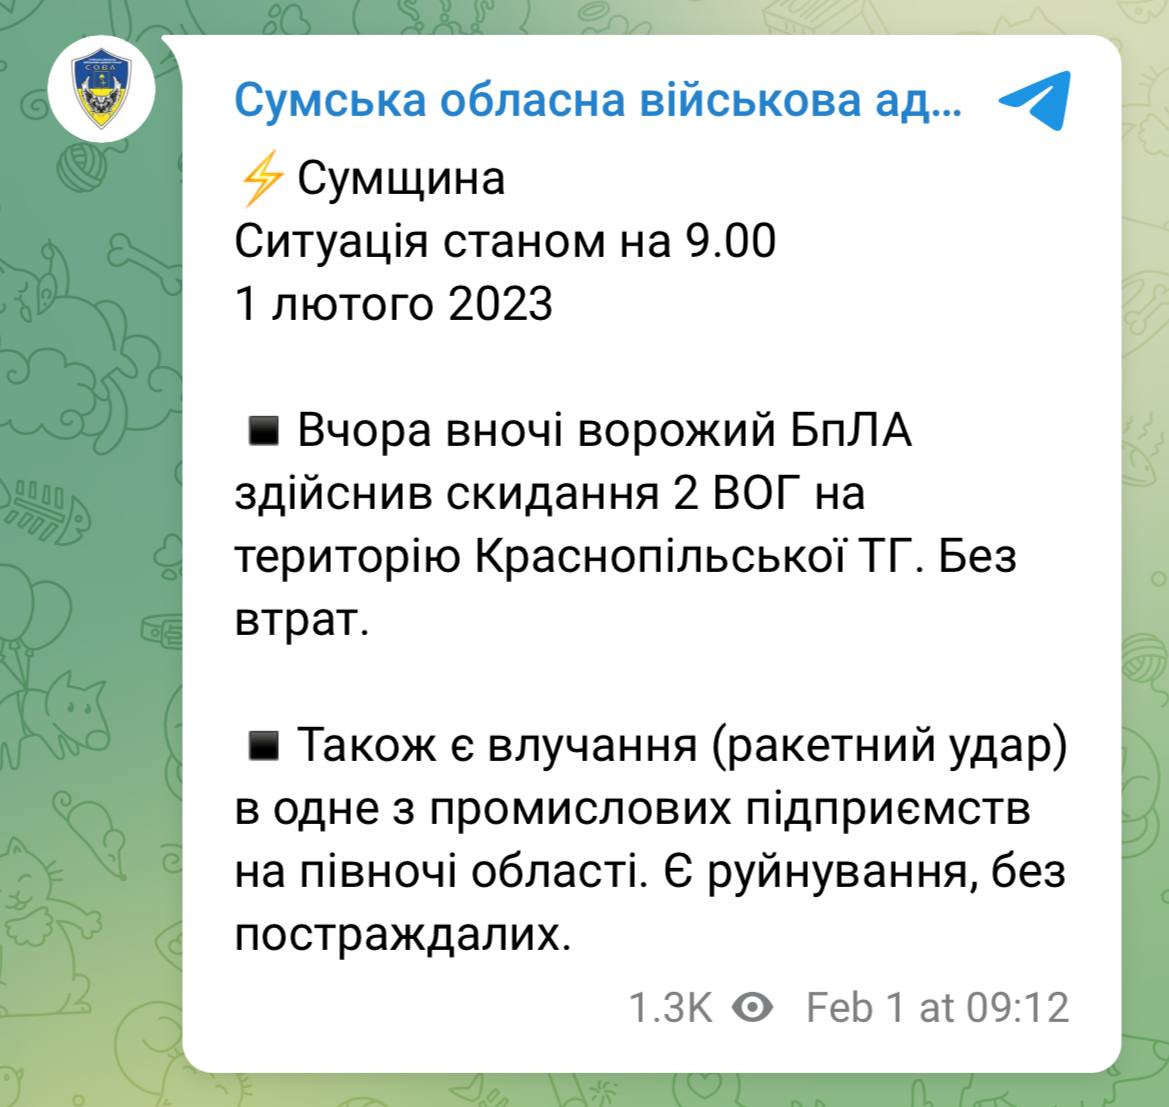 Труха телеграмм украина на русском языке смотреть онлайн бесплатно фото 73